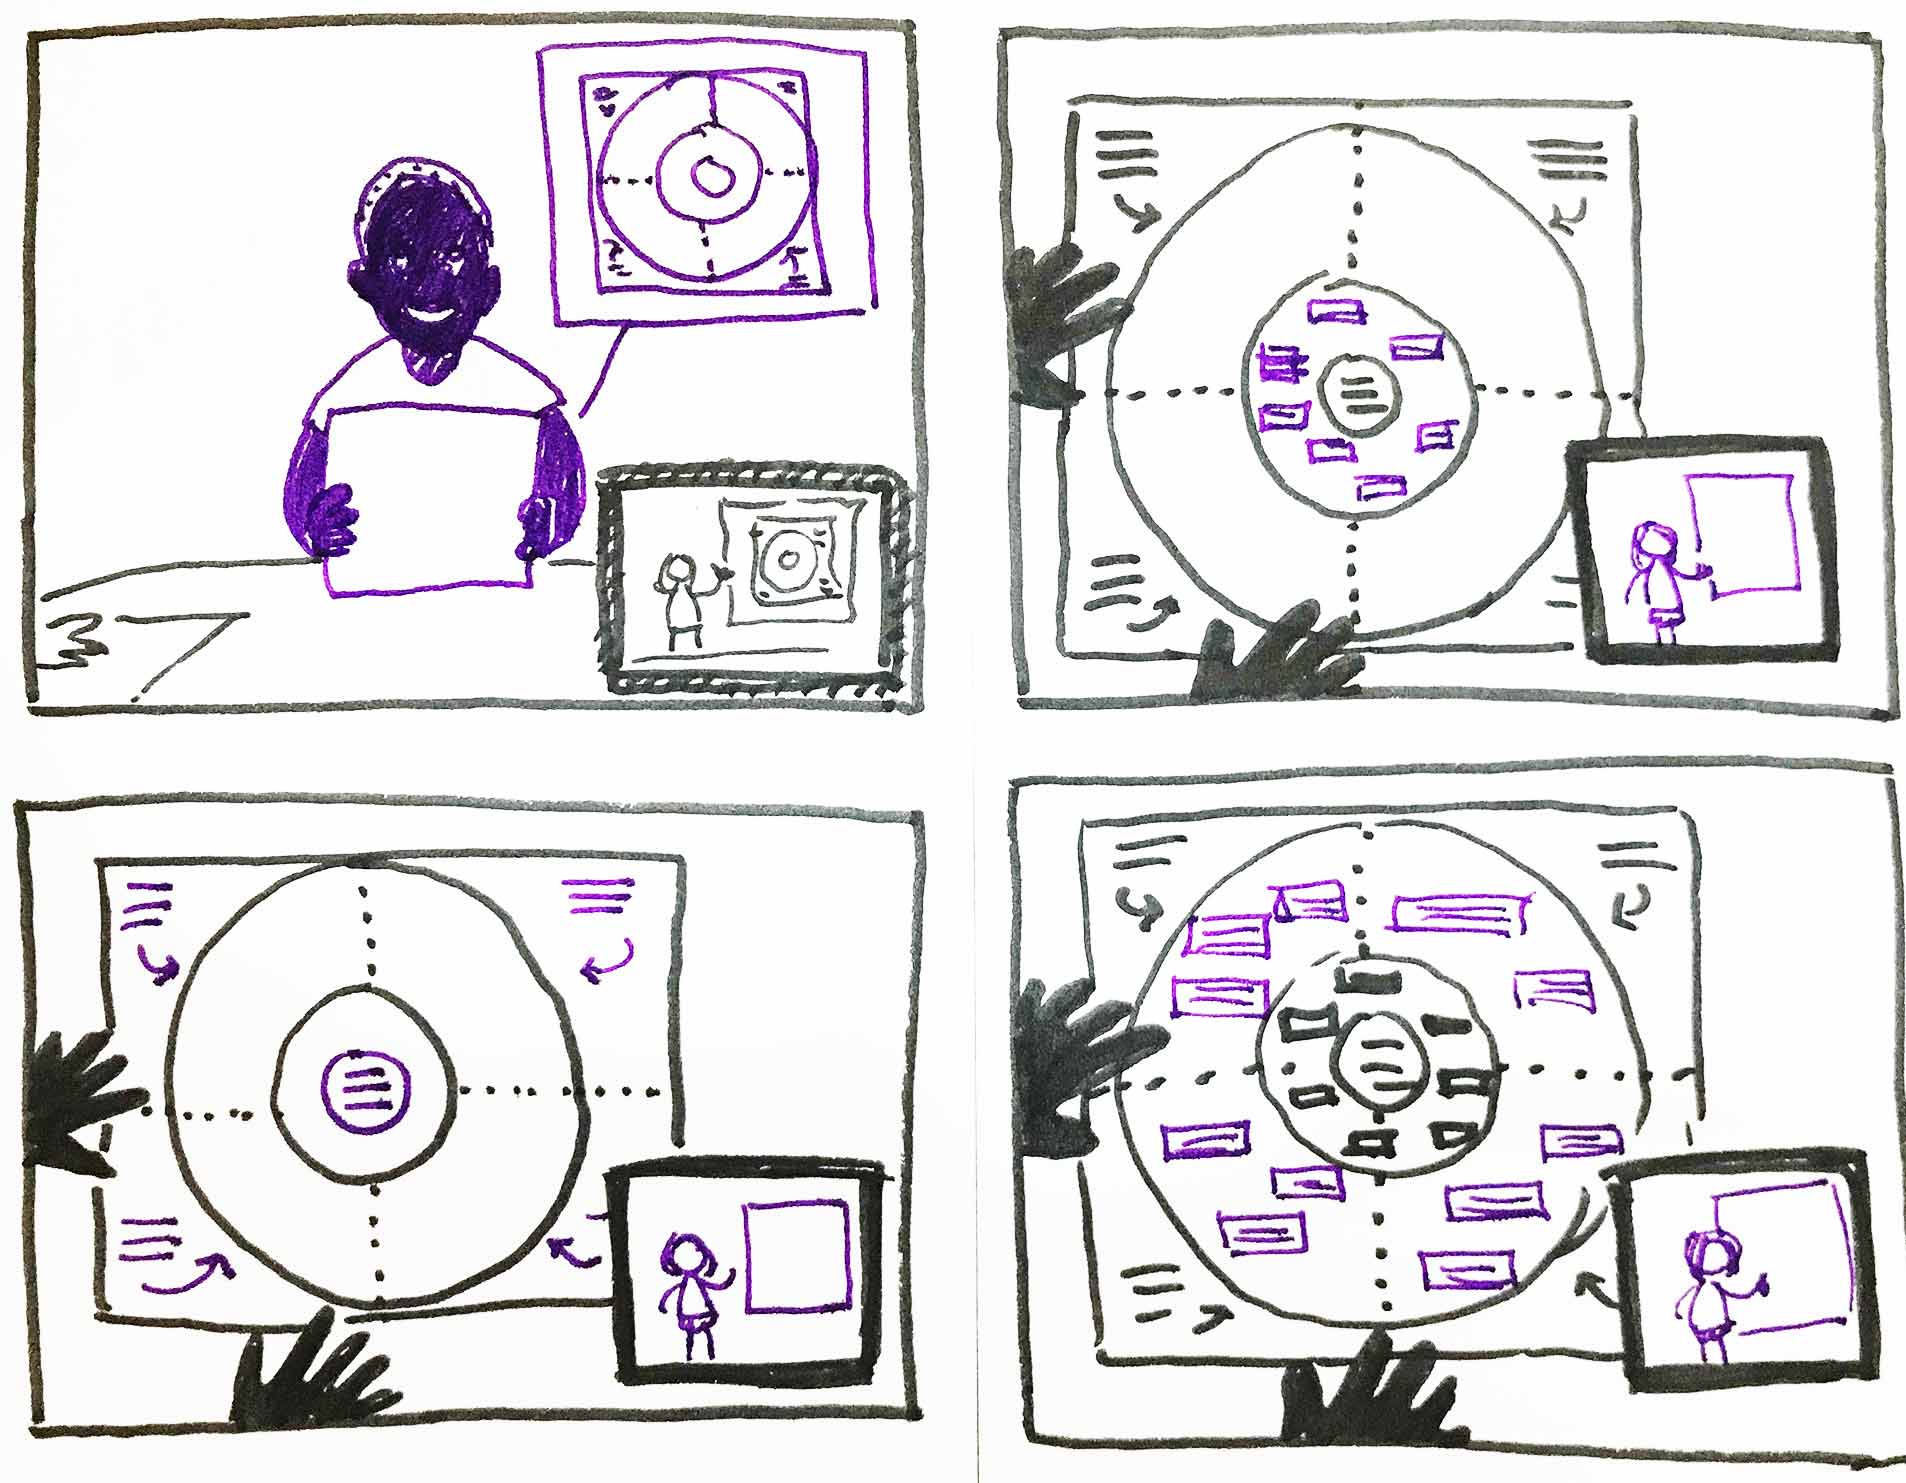 Sketch of four storyboard panels showing a presentation task overlaid on group workshop tasks